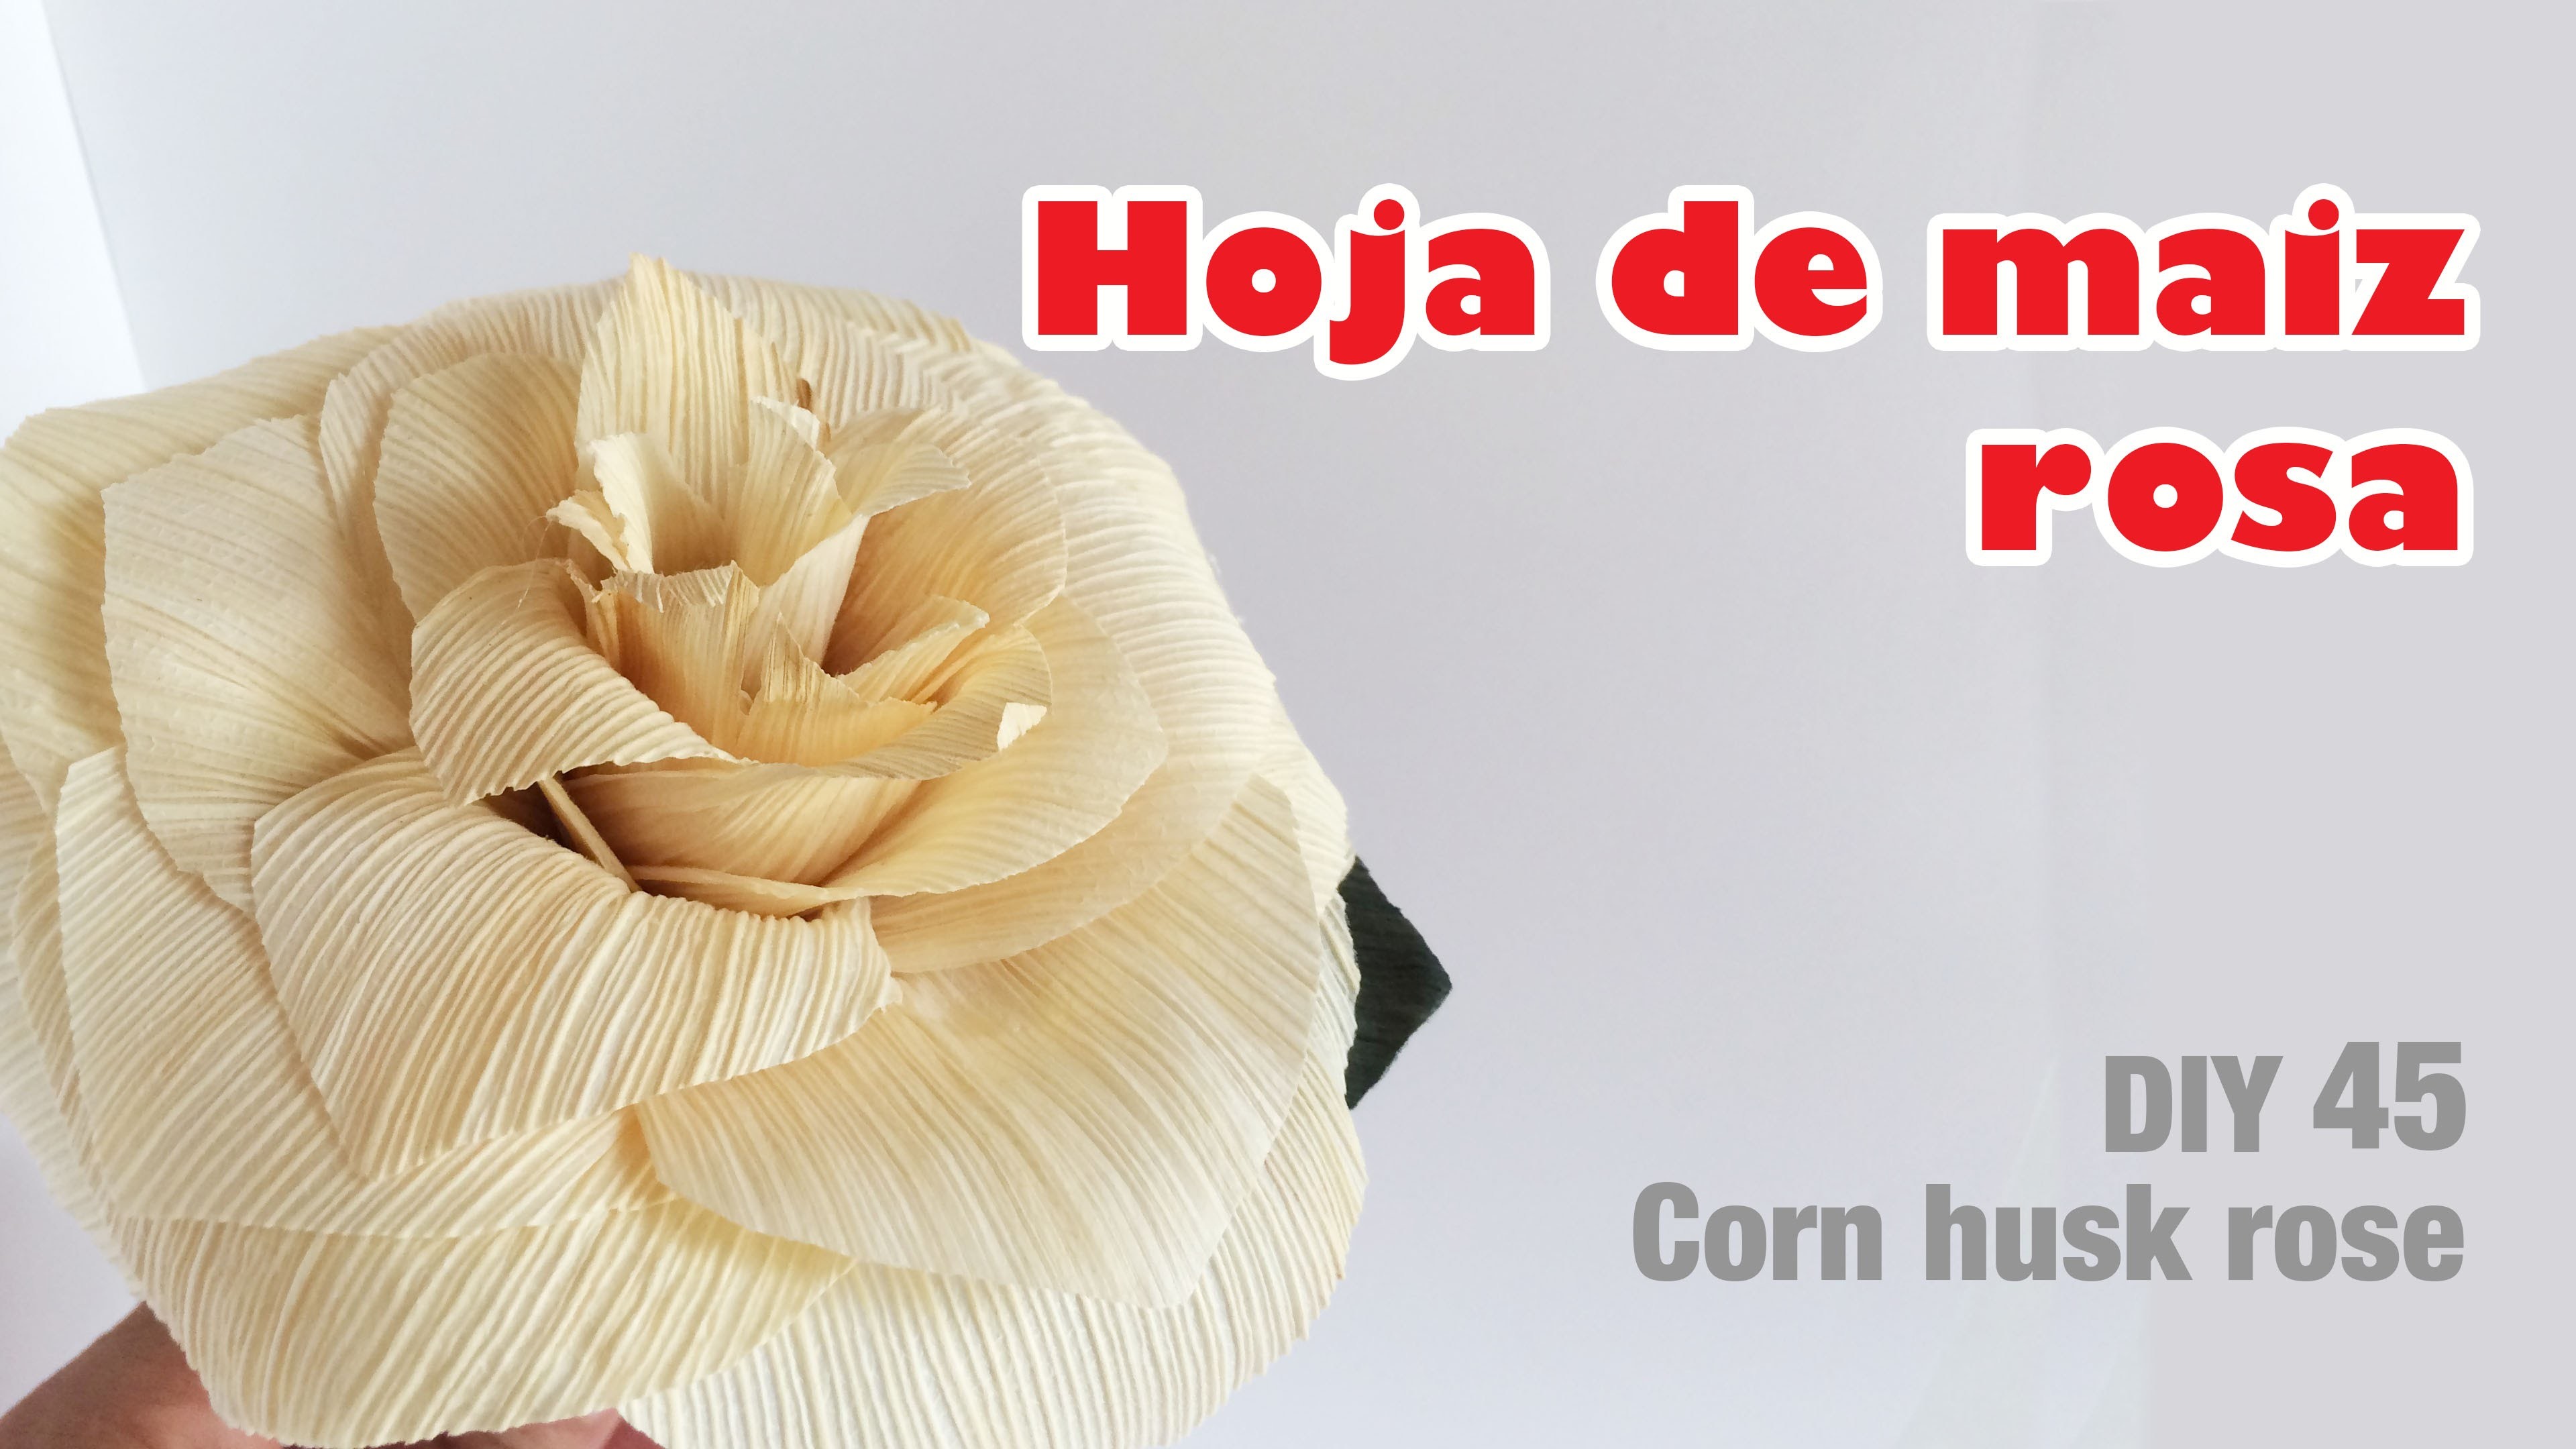 Como hacer flor con hoja de maíz rosa 45.how to make a corn husk flower rose